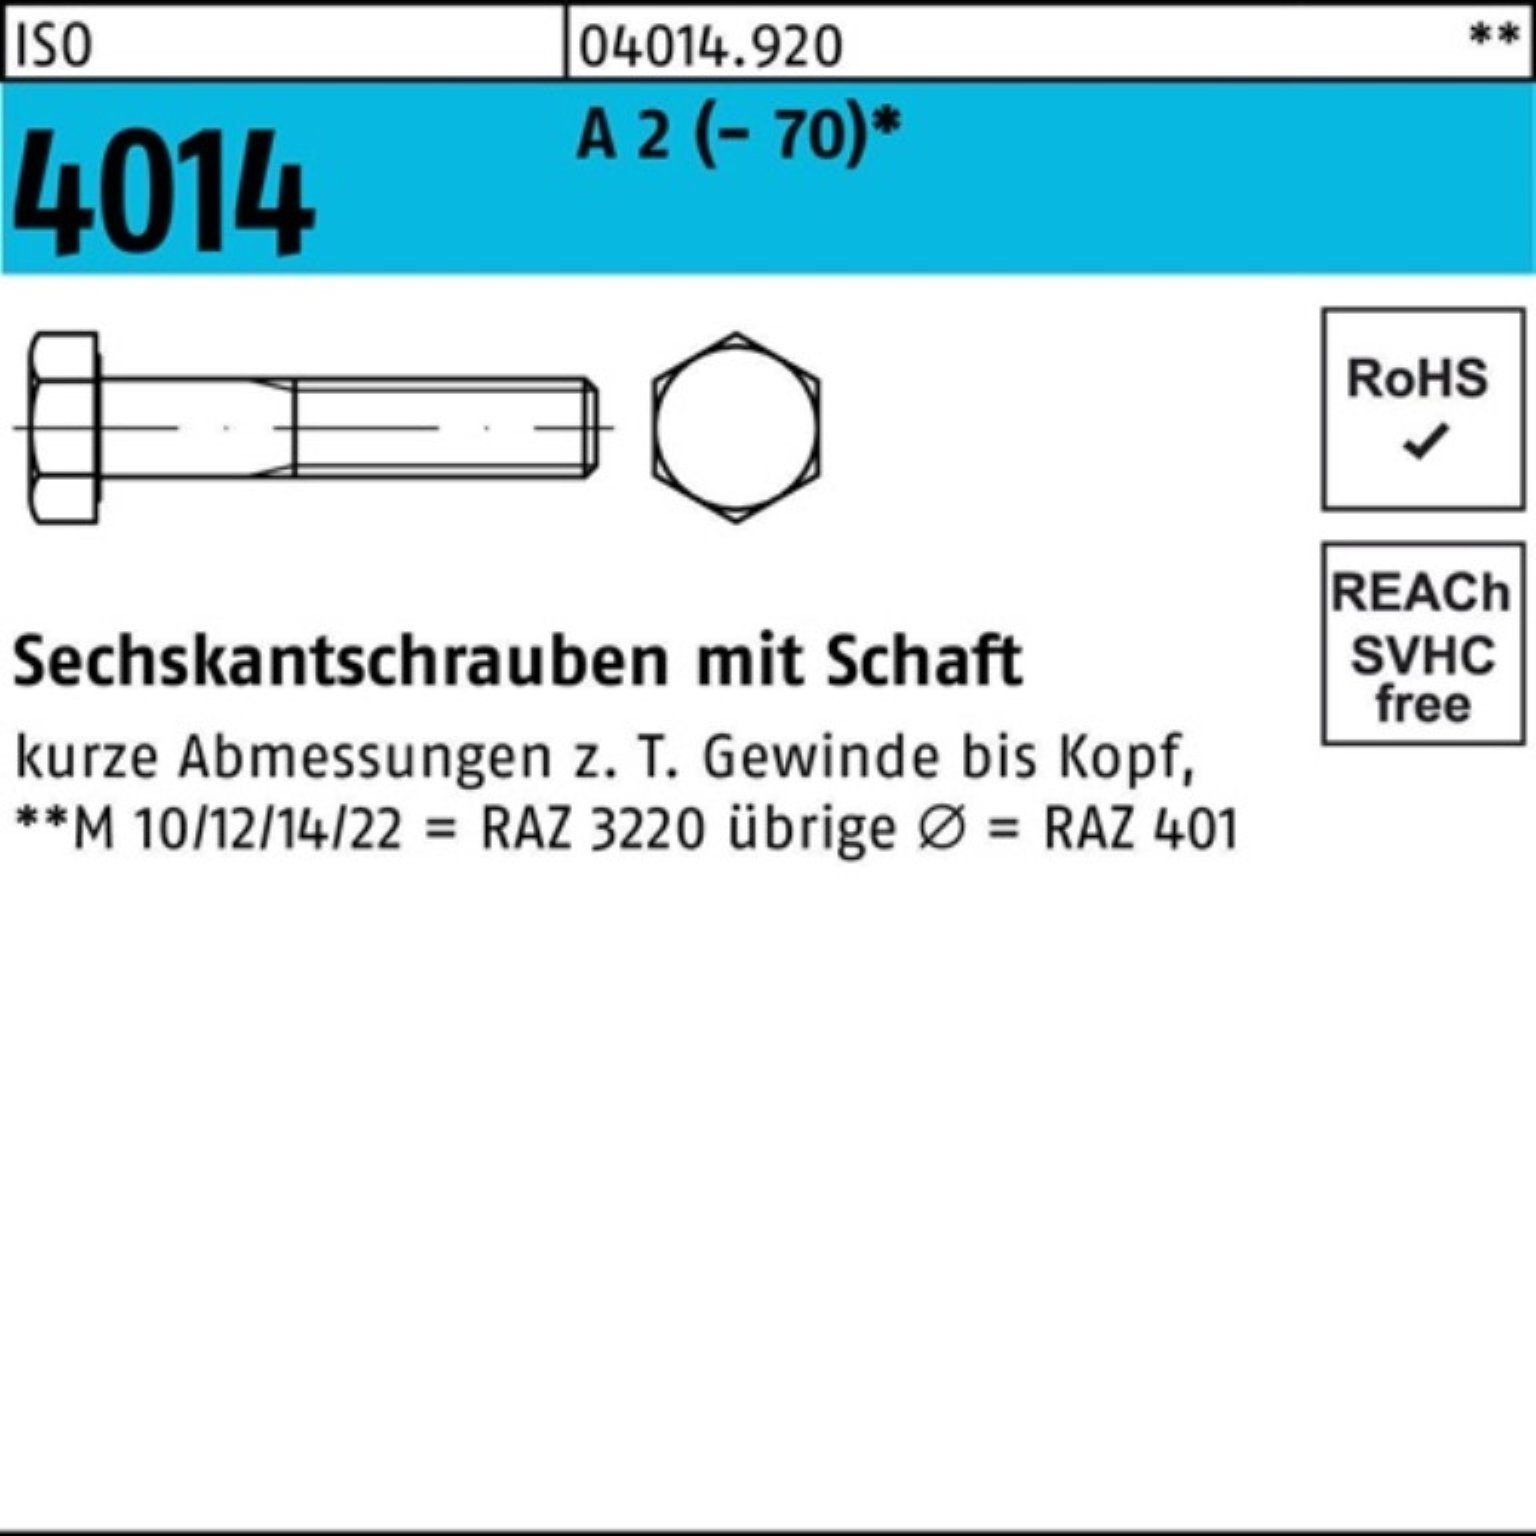 Bufab Sechskantschraube 100er Pack Sechskantschraube ISO 4014 Schaft M14x 170 A 2 (70) 1 St